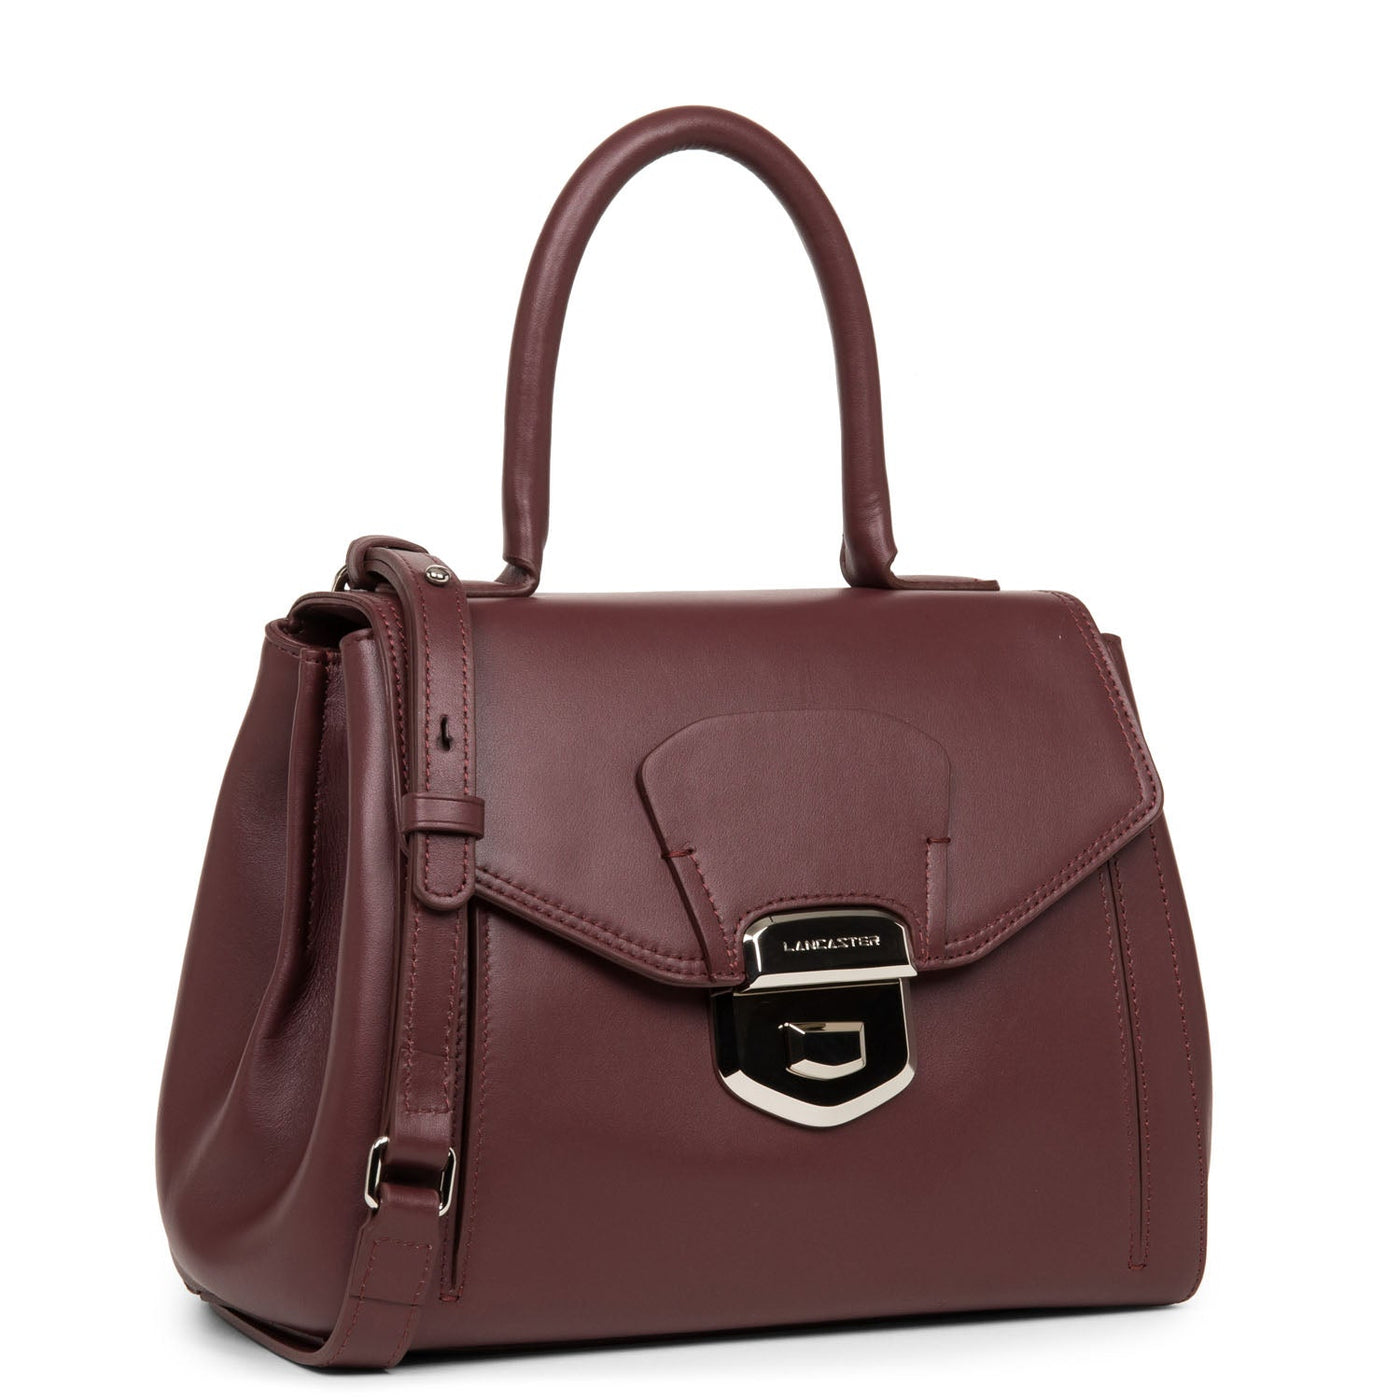 handbag - parisienne sophia #couleur_bordeaux